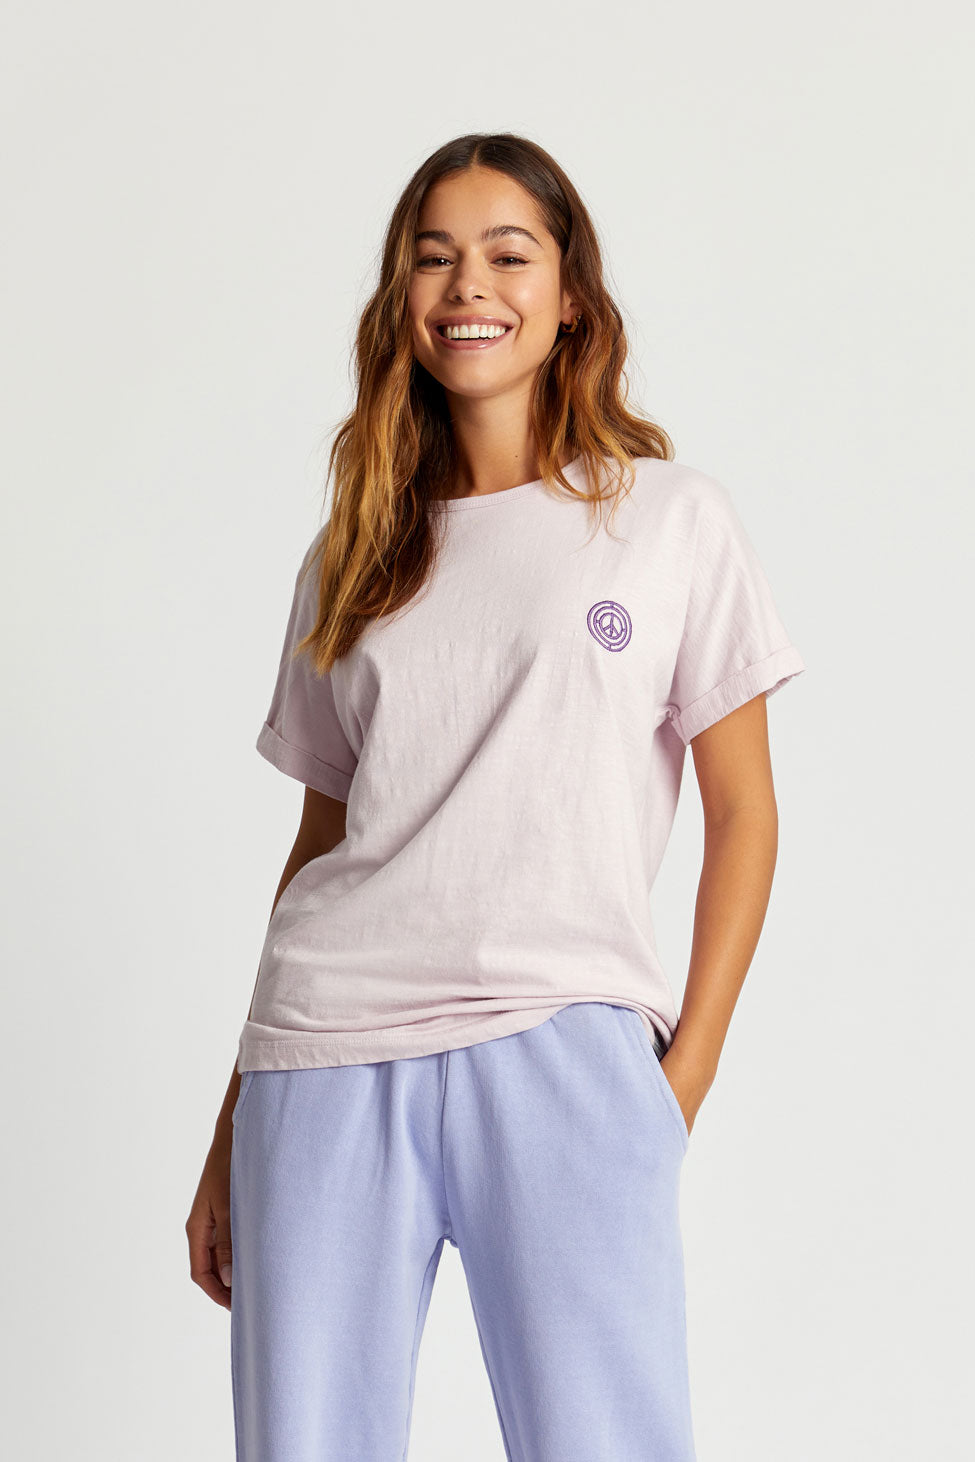 T-shirt violet SUNRISE en coton biologique de Komodo